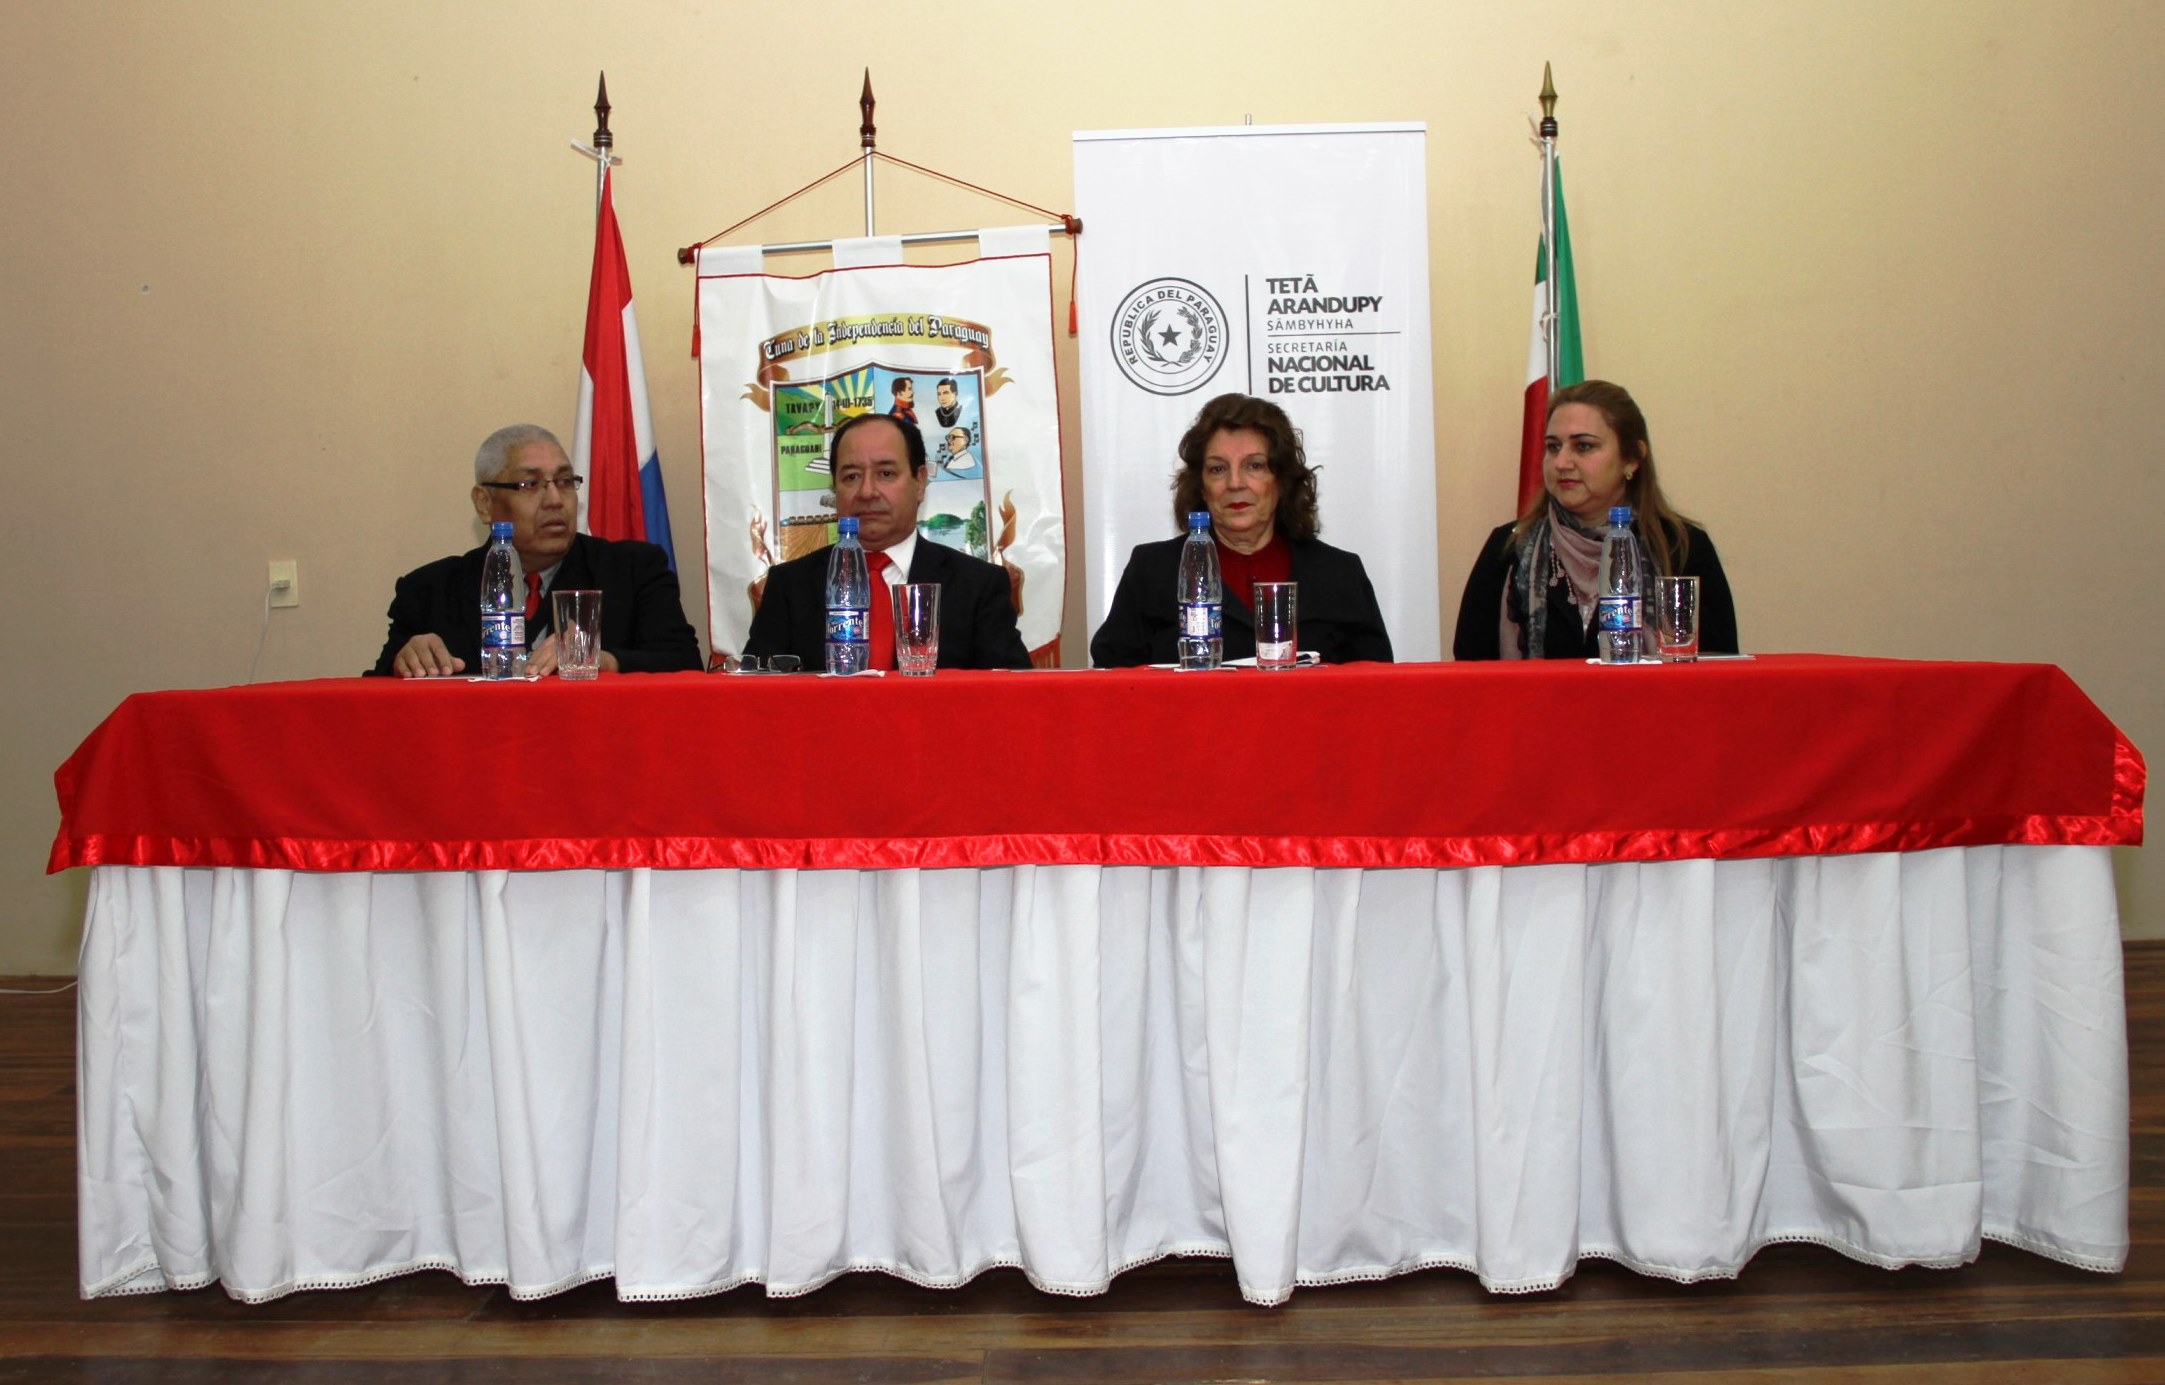 En Paraguarí, avanzan trabajos con miras al Plan Nacional de Cultura imagen